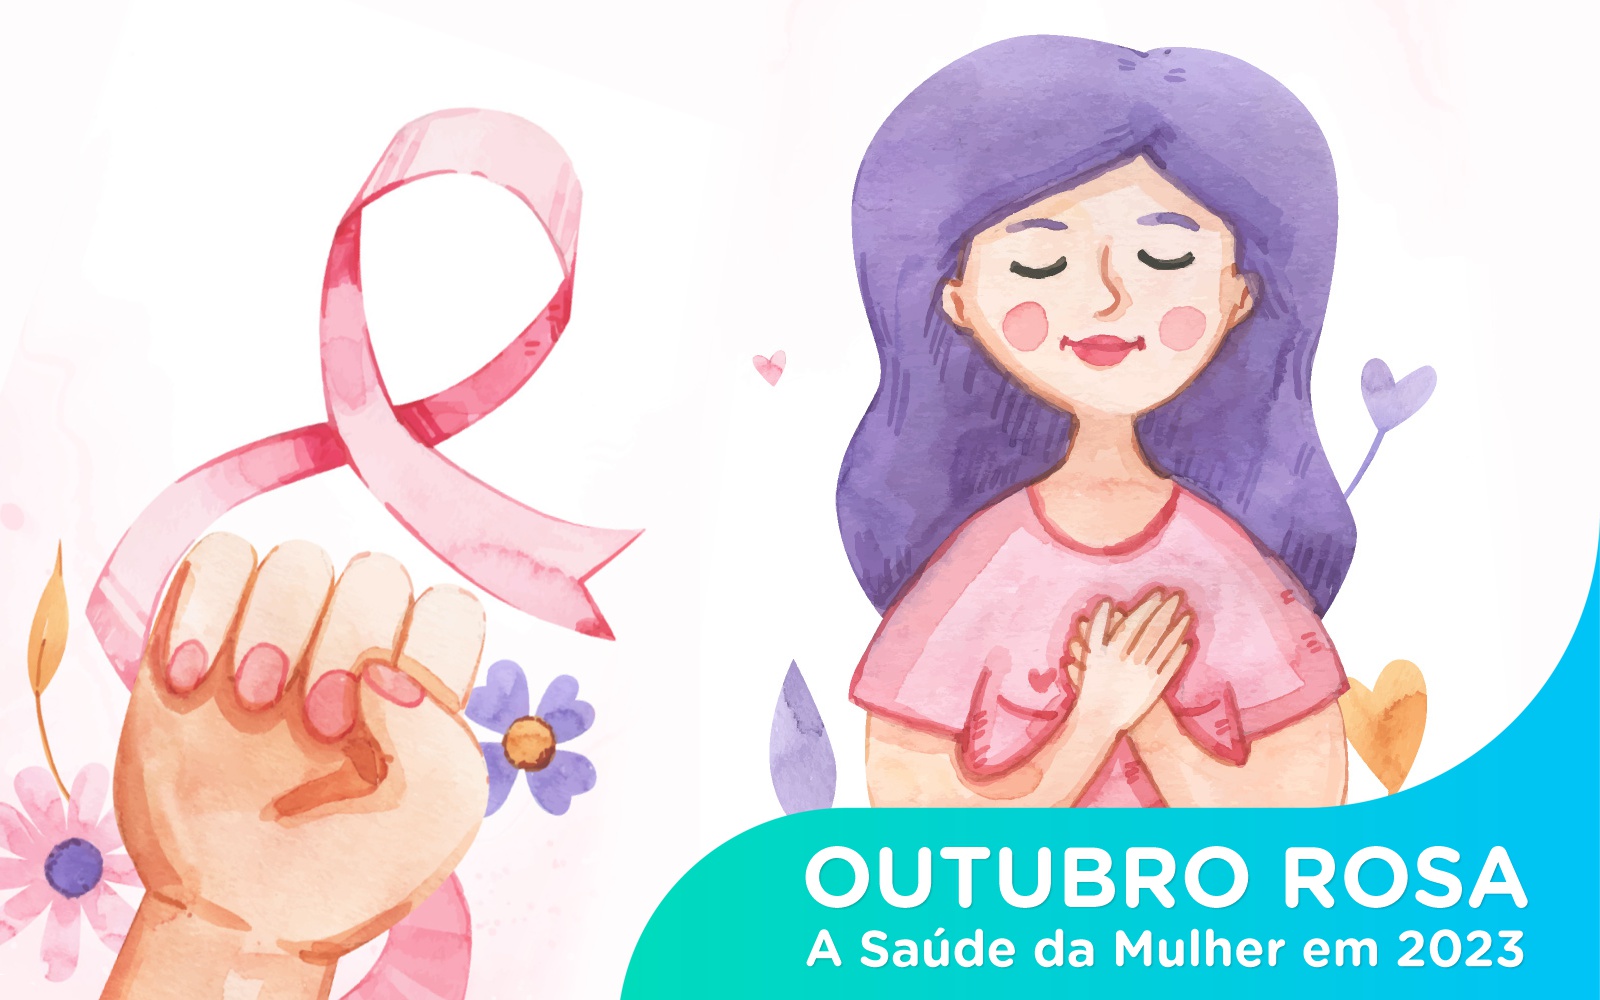 Hospital Vera Cruz - Blog - Outubro Rosa e Saude da Mulher - Capa